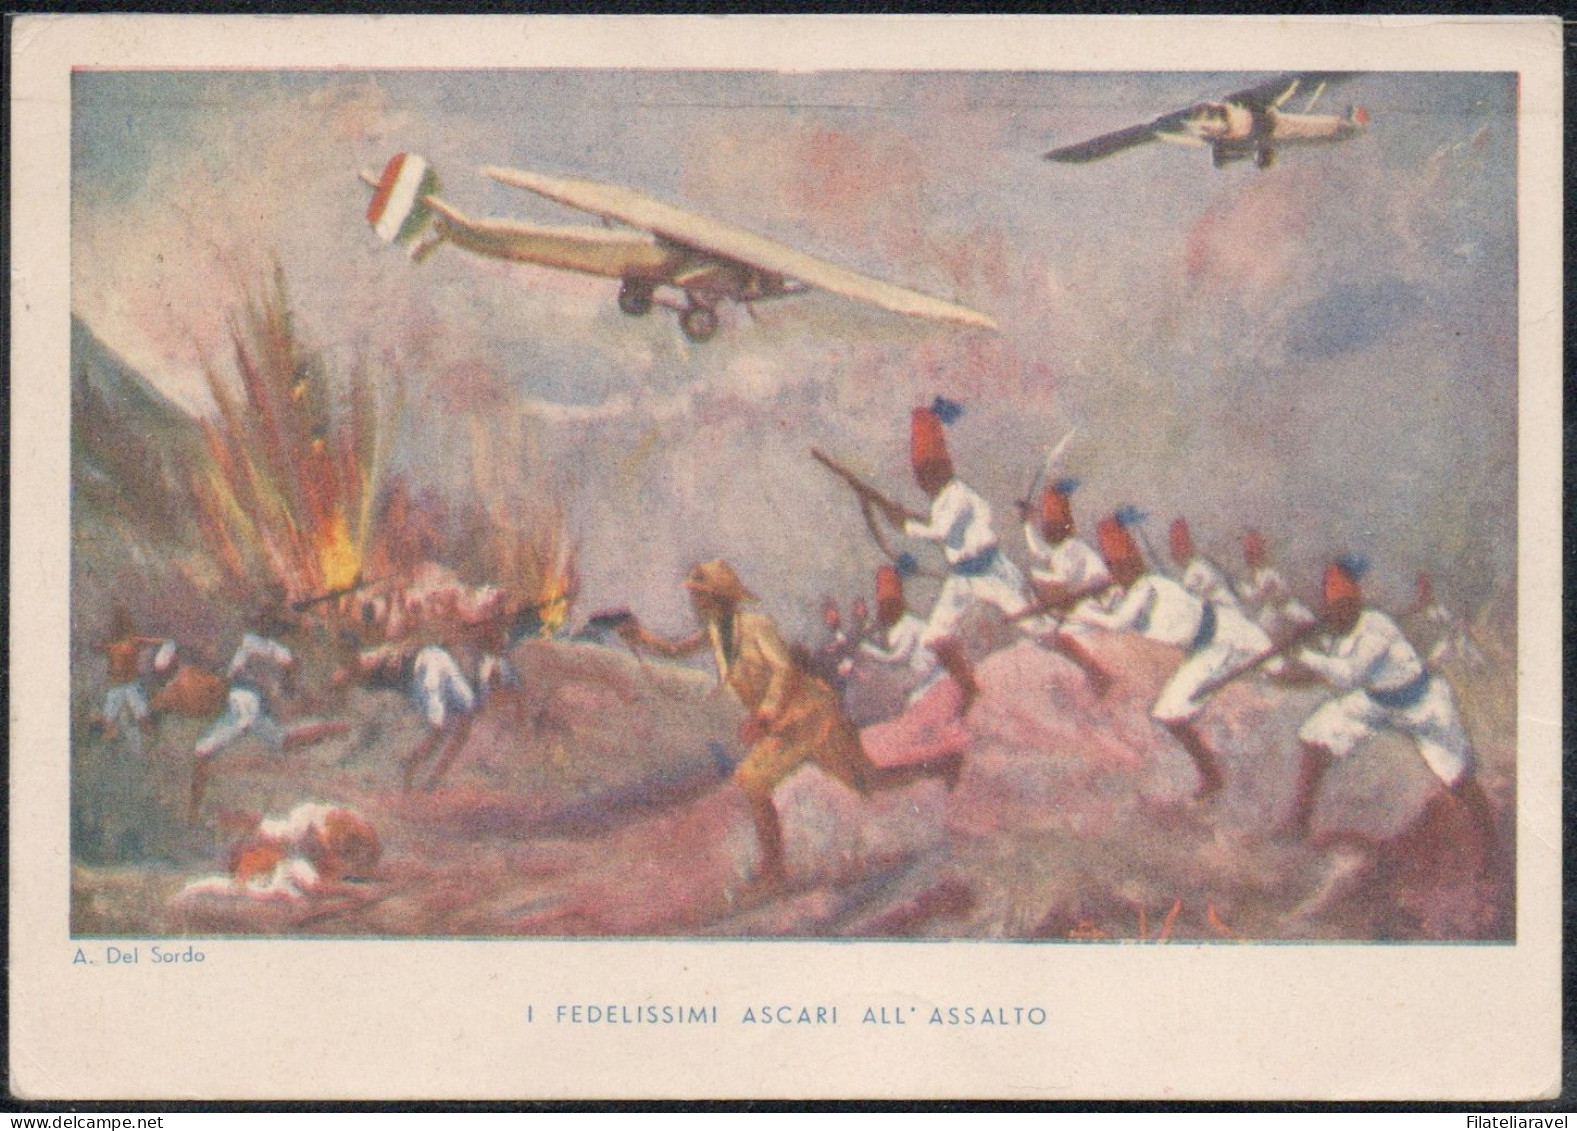 Cart Cartolina - Militare - I Fedelissimi Ascari All'assalto Illustratore A. Del Sordo, Viaggiata (12) - Postage Due